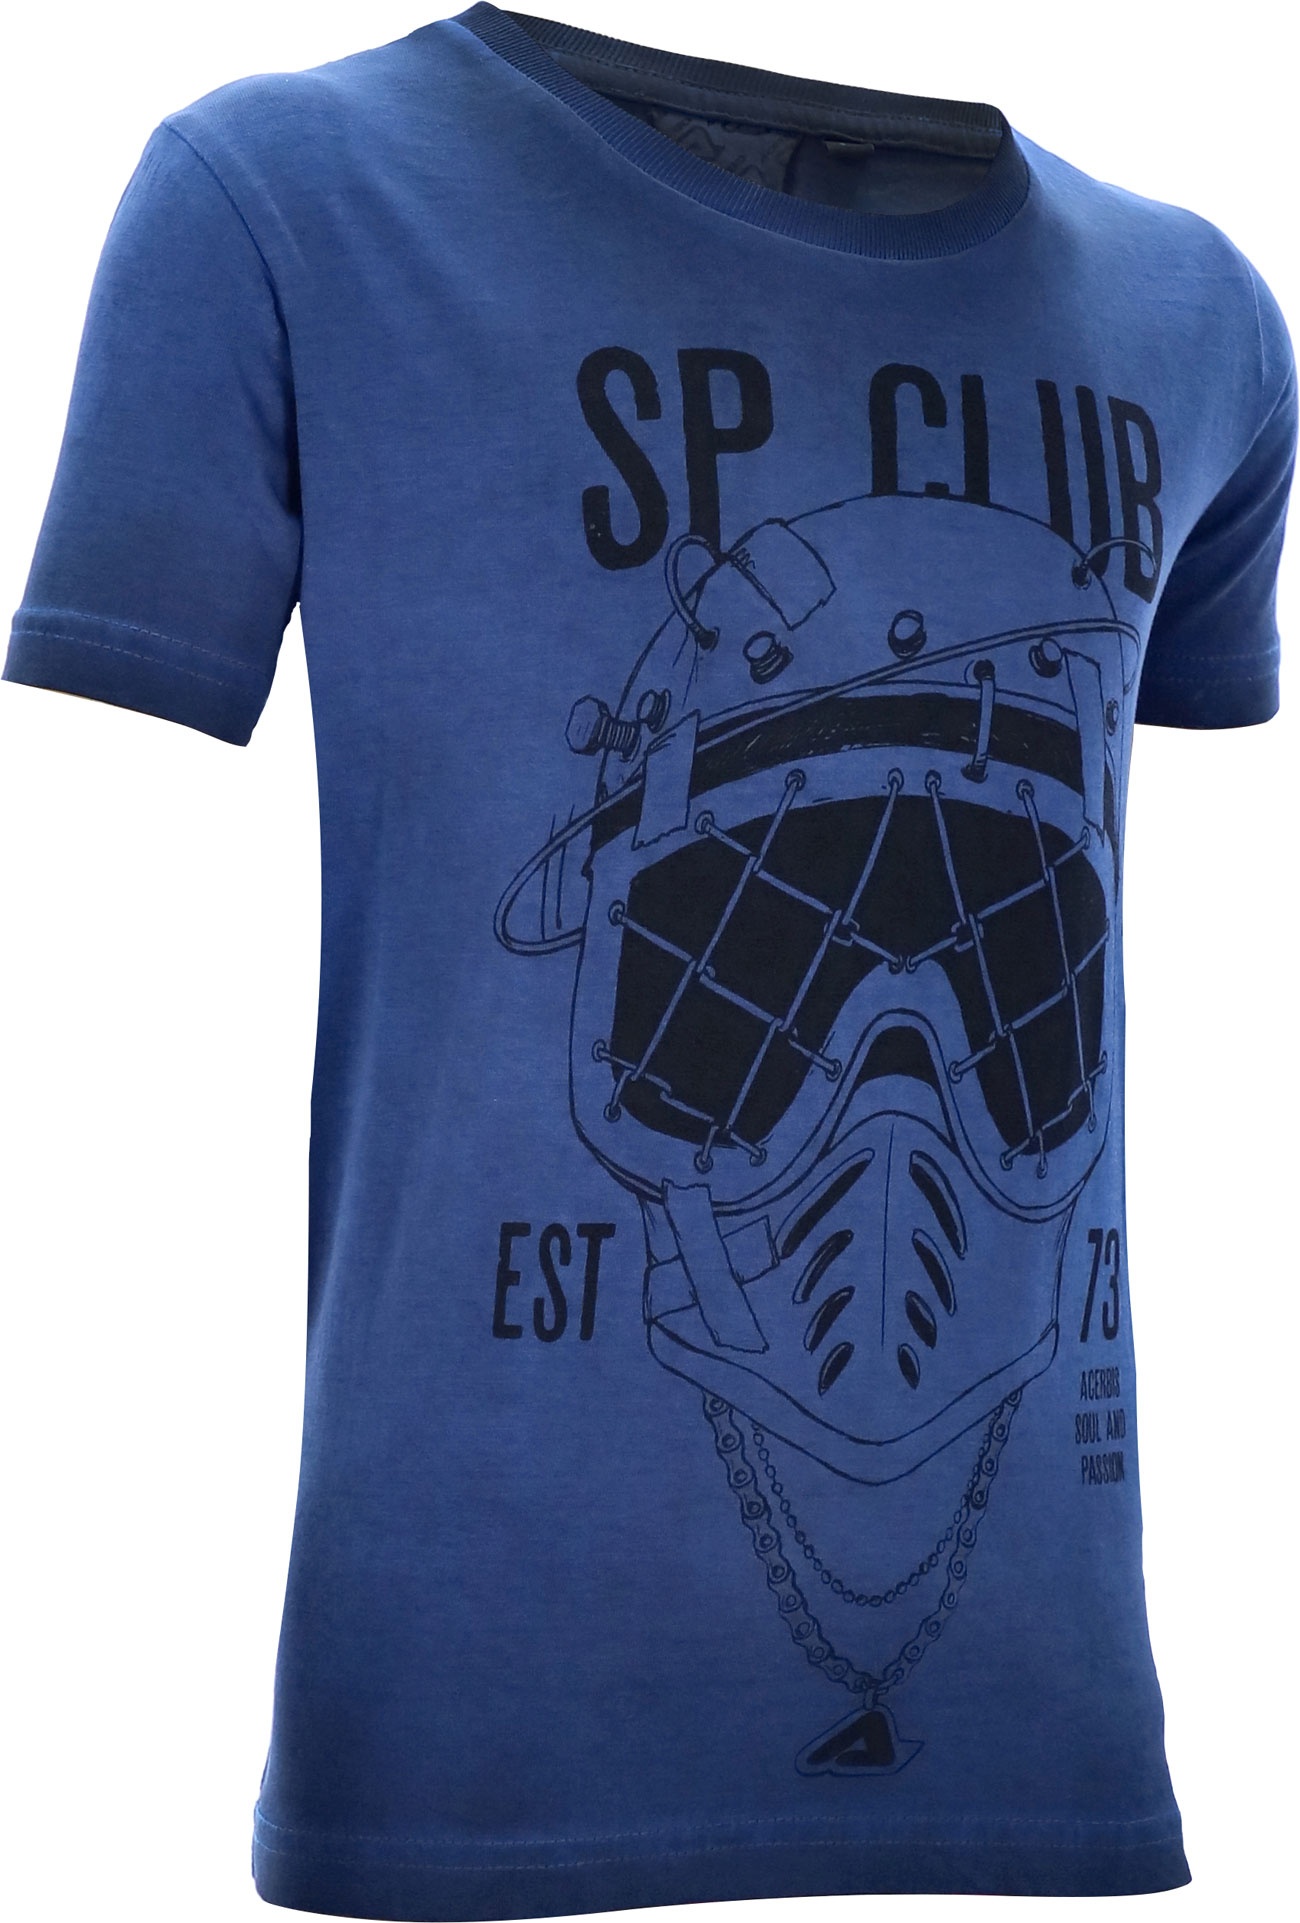 Acerbis SP Club Diver, t-shirt pour enfants - Bleu/Noir - XXL